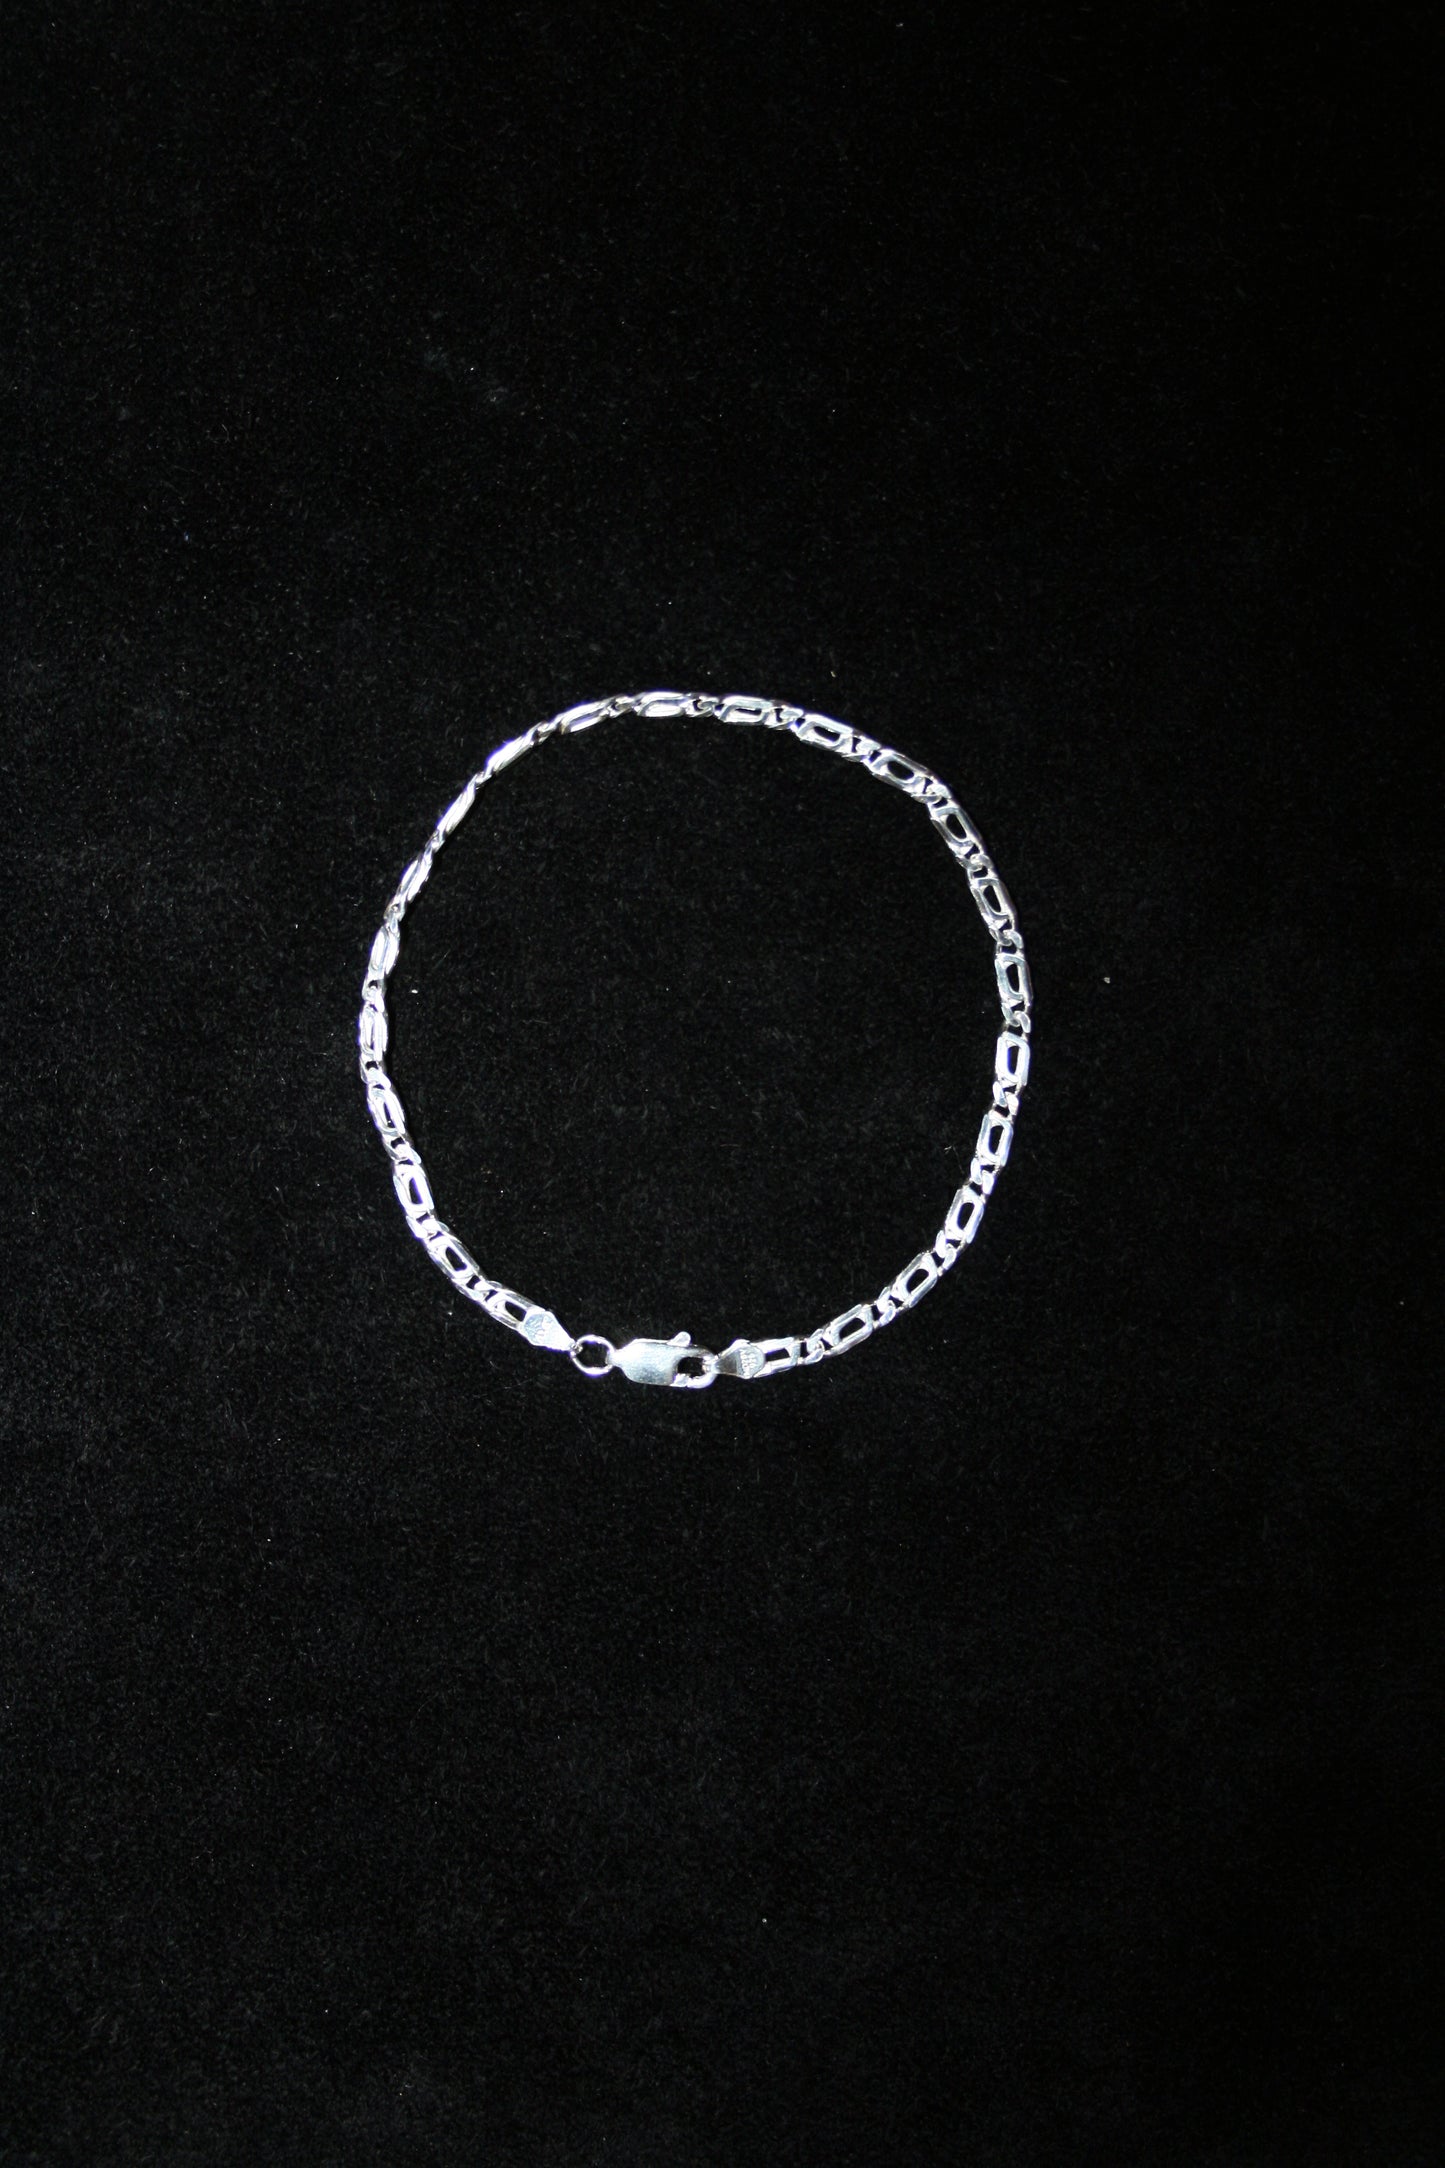 AHAU Chain Bracelet CH002 Mexican Jewelry